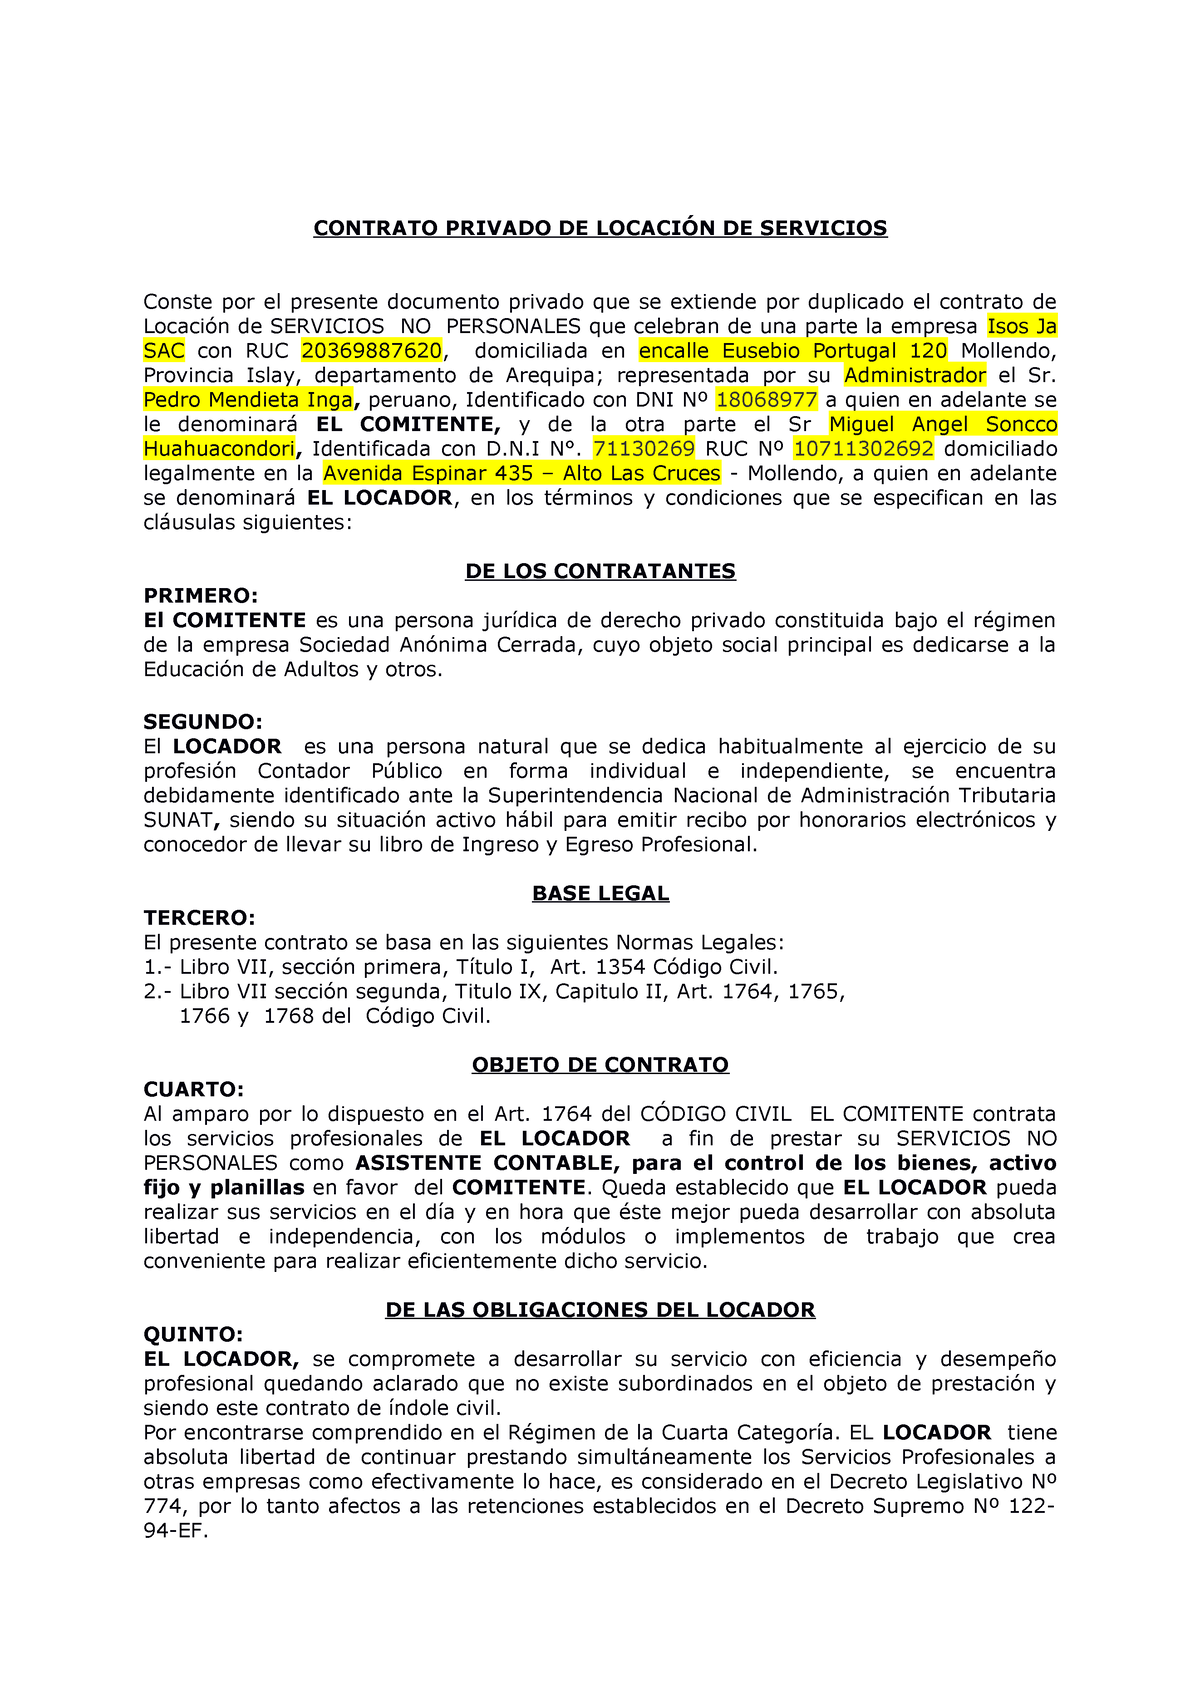 Modelo Contrato De Locacion Isos Contrato Privado De LocaciÓn De Servicios Conste Por El 0205